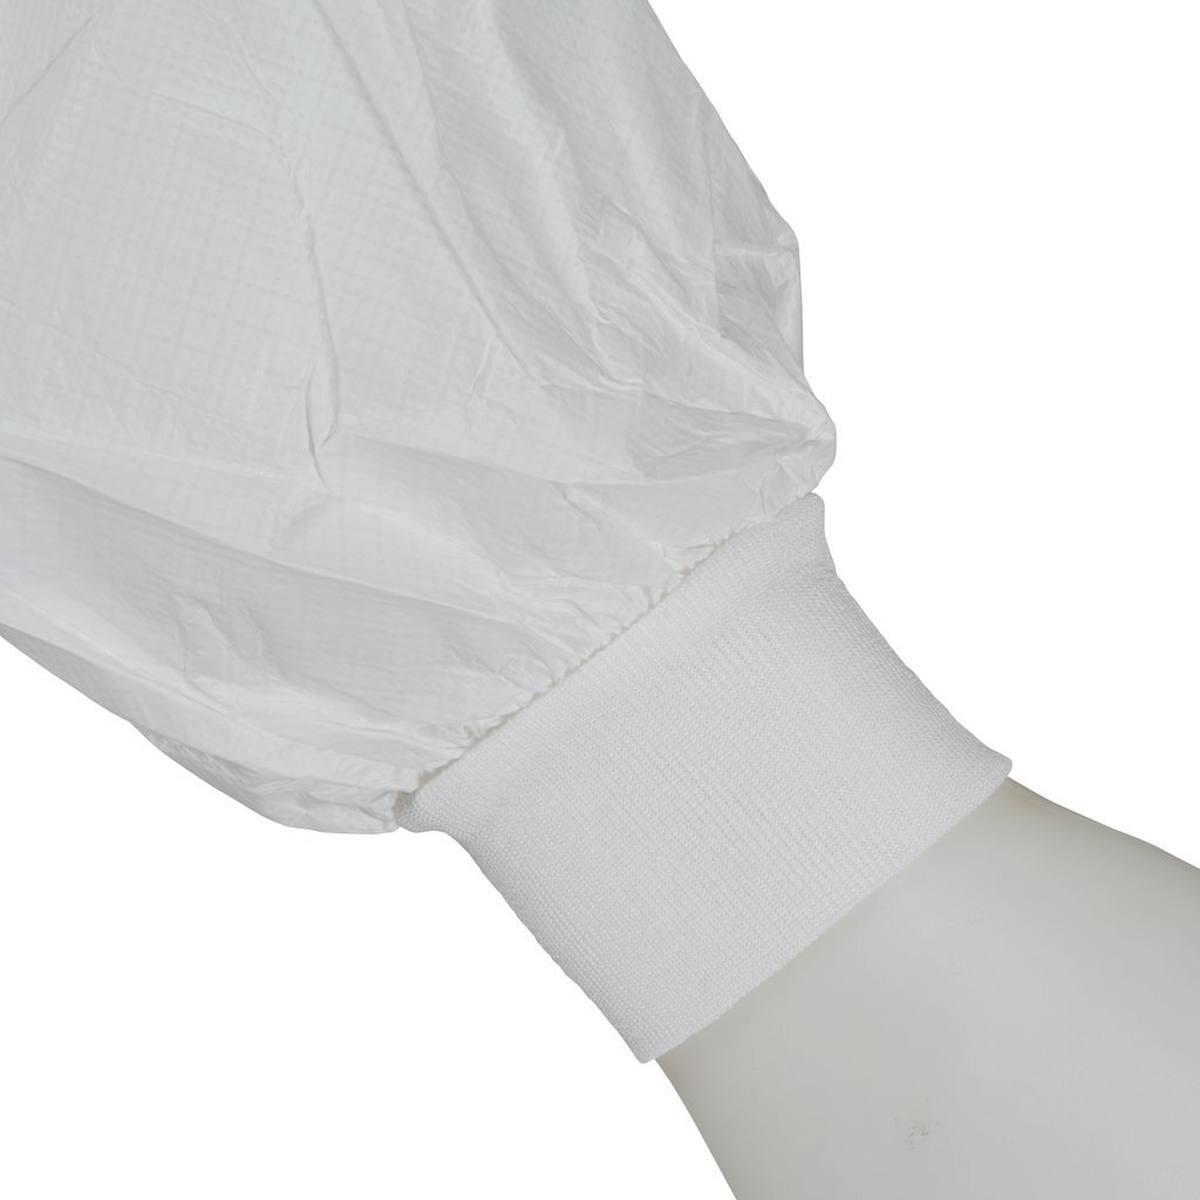 3M 4440 Manteau, blanc, taille XL, particulièrement respirant, très léger, avec fermeture éclair, poignets tricotés